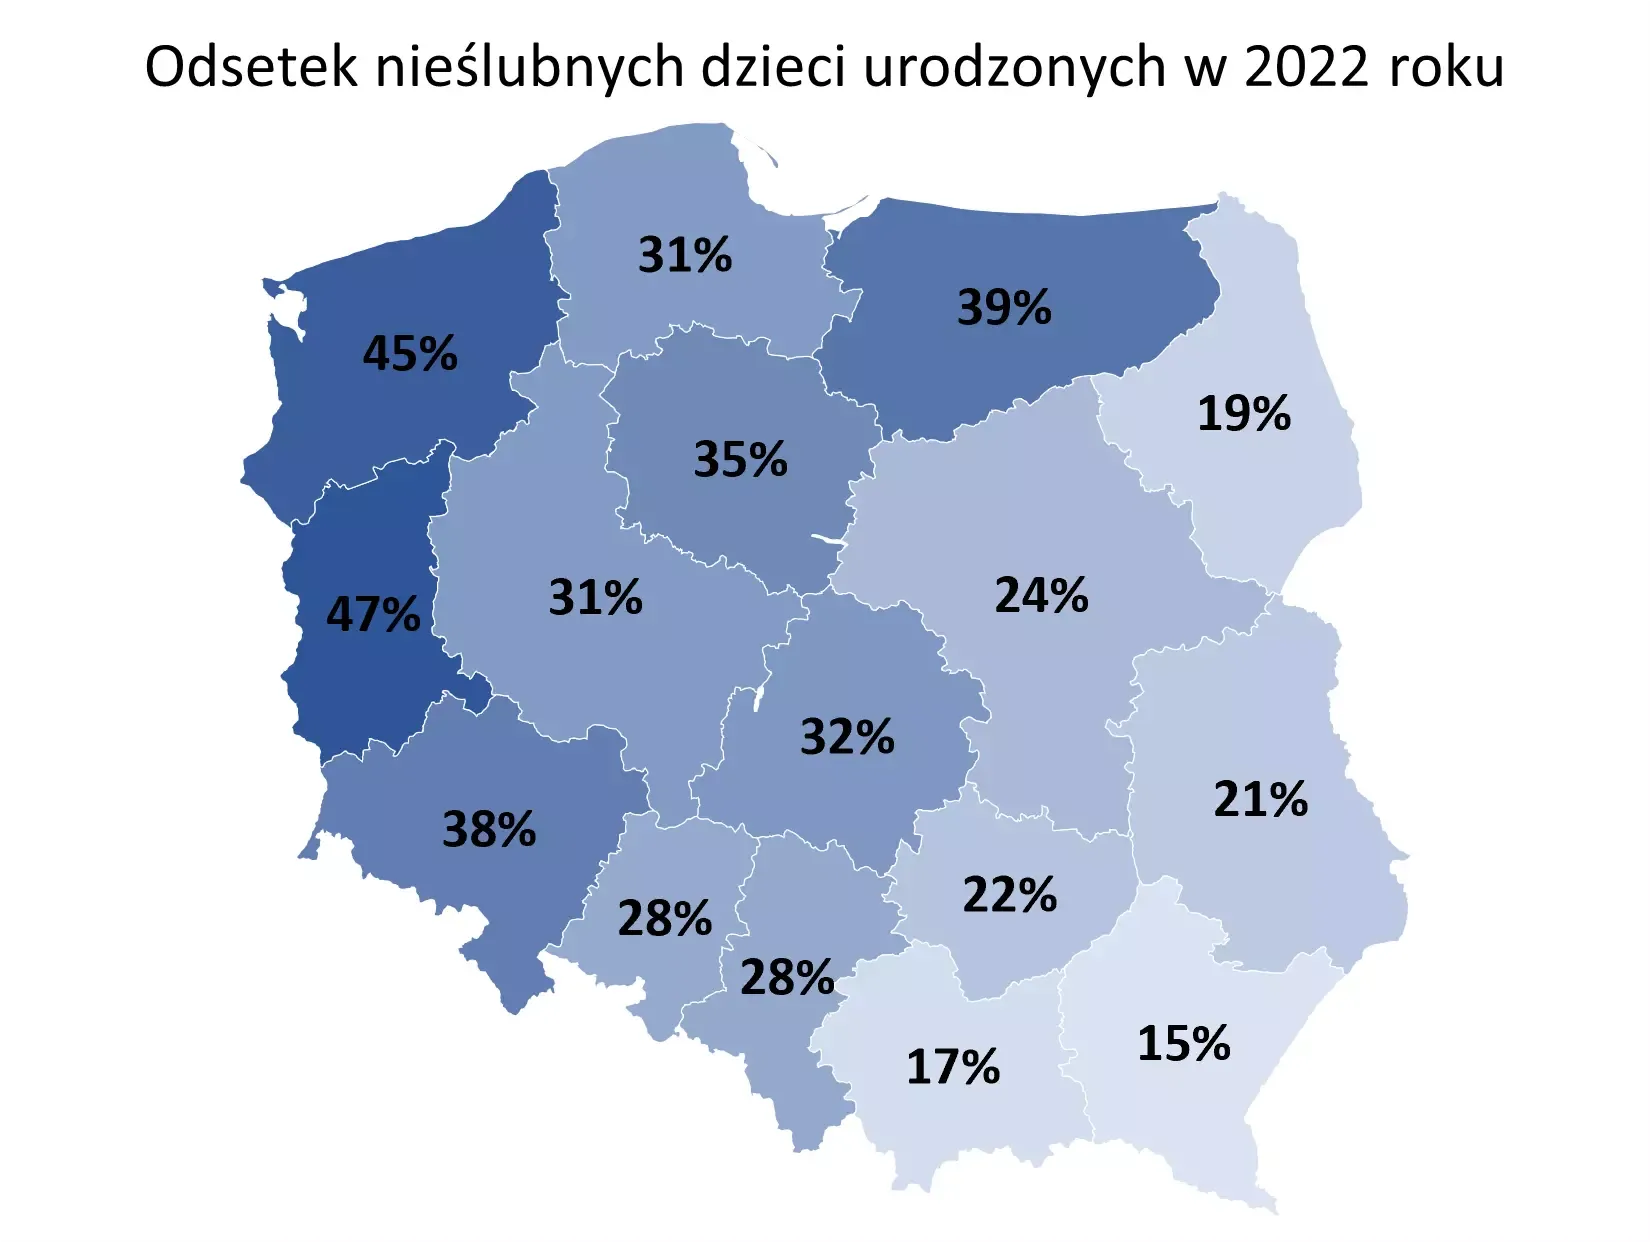 Mapa pokazuje gdzie w Polsce rodzi się najwięcej nieślubnych dzieci